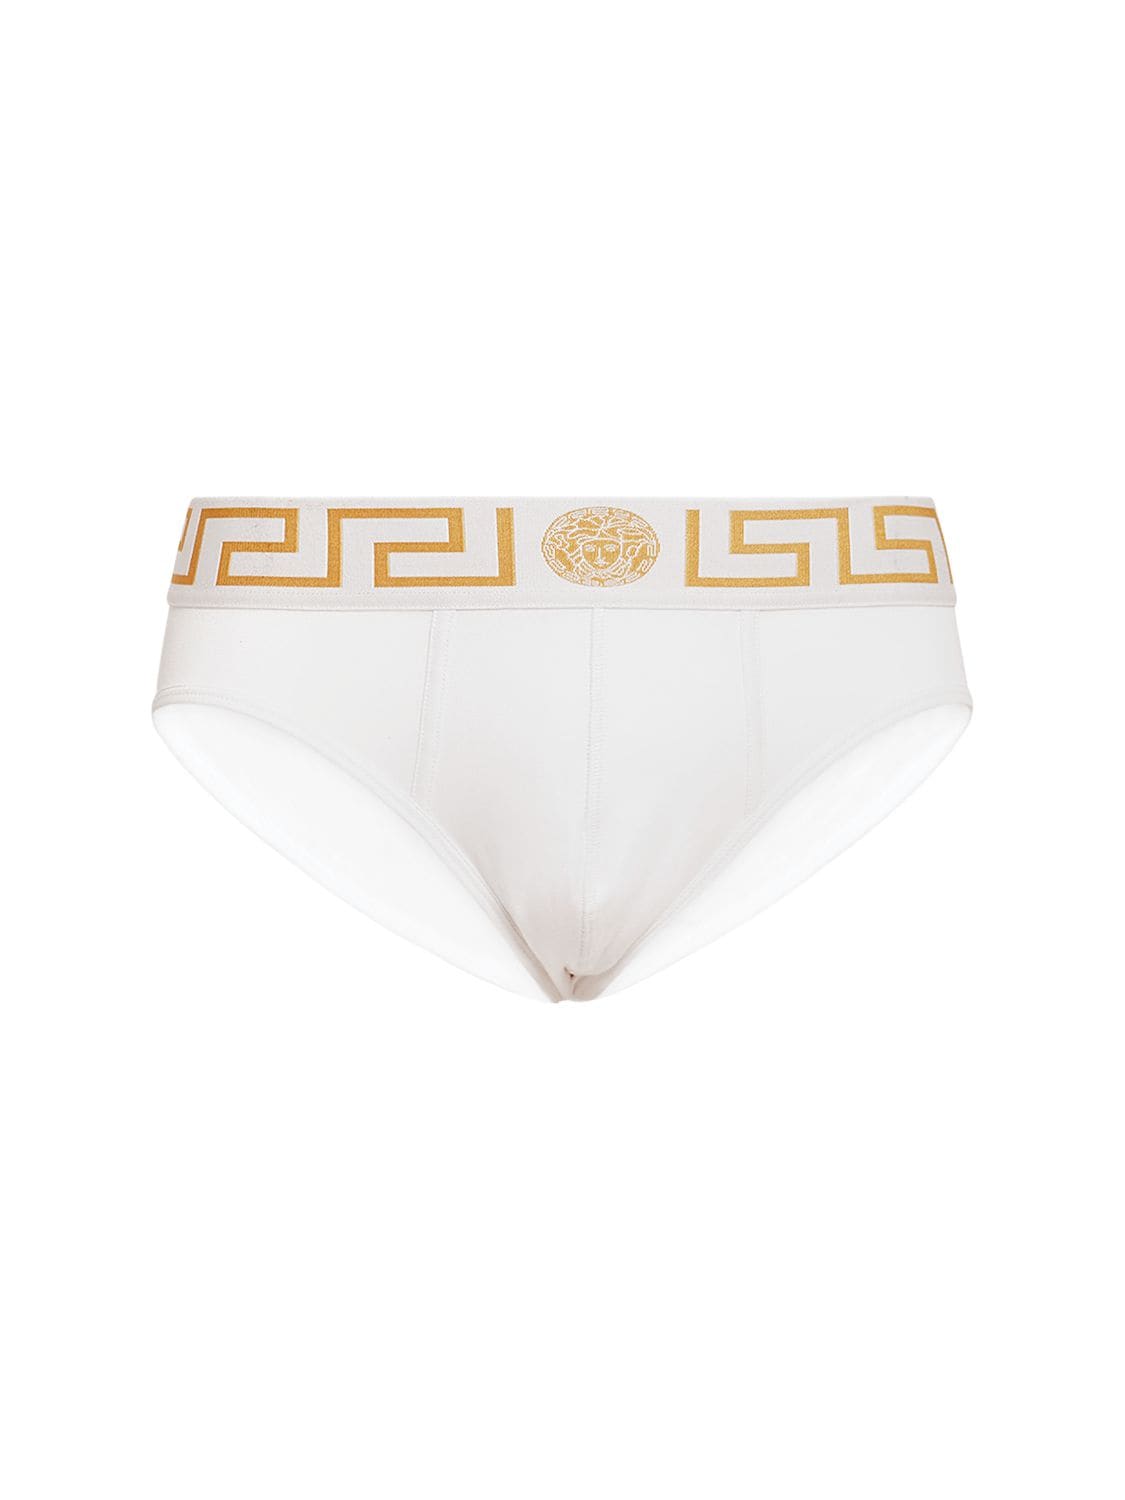 Versace Medusa Logo Stretch-Cotton Undershirt, Underwear